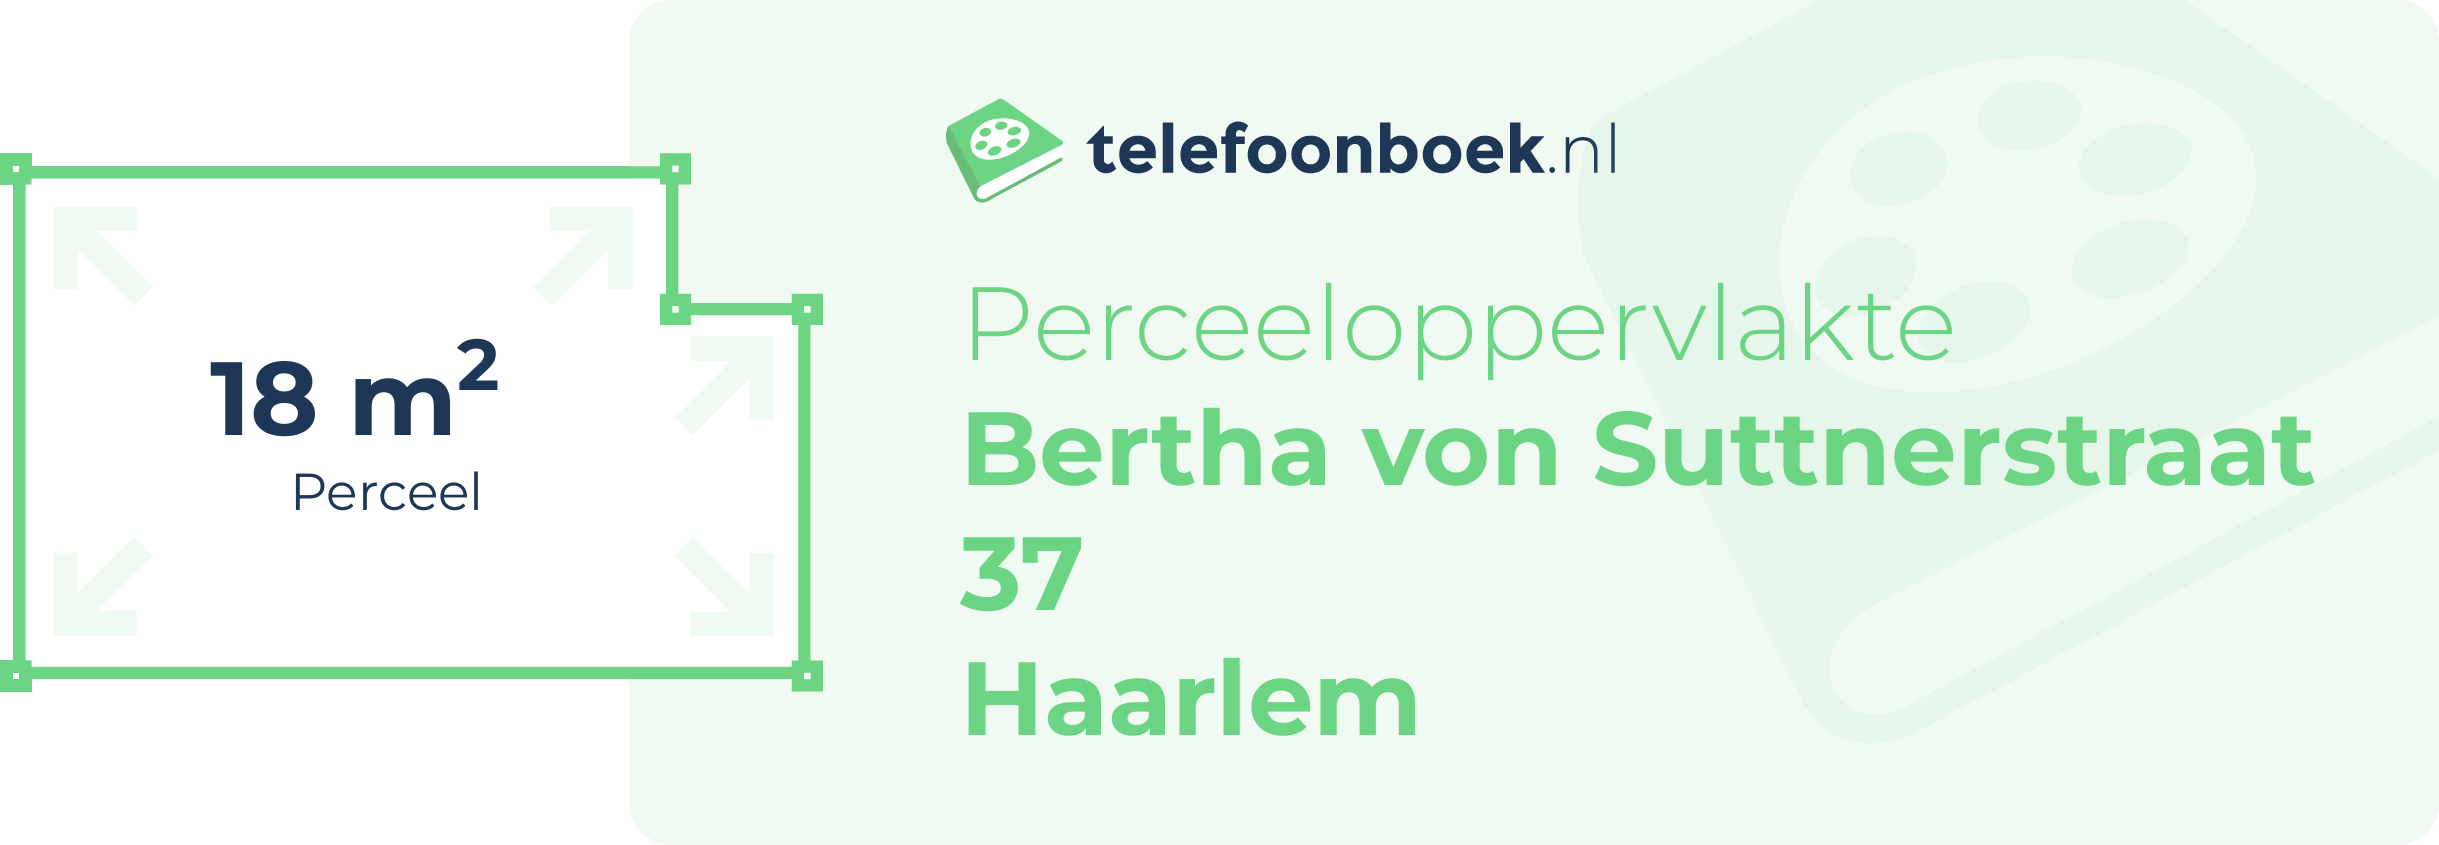 Perceeloppervlakte Bertha Von Suttnerstraat 37 Haarlem